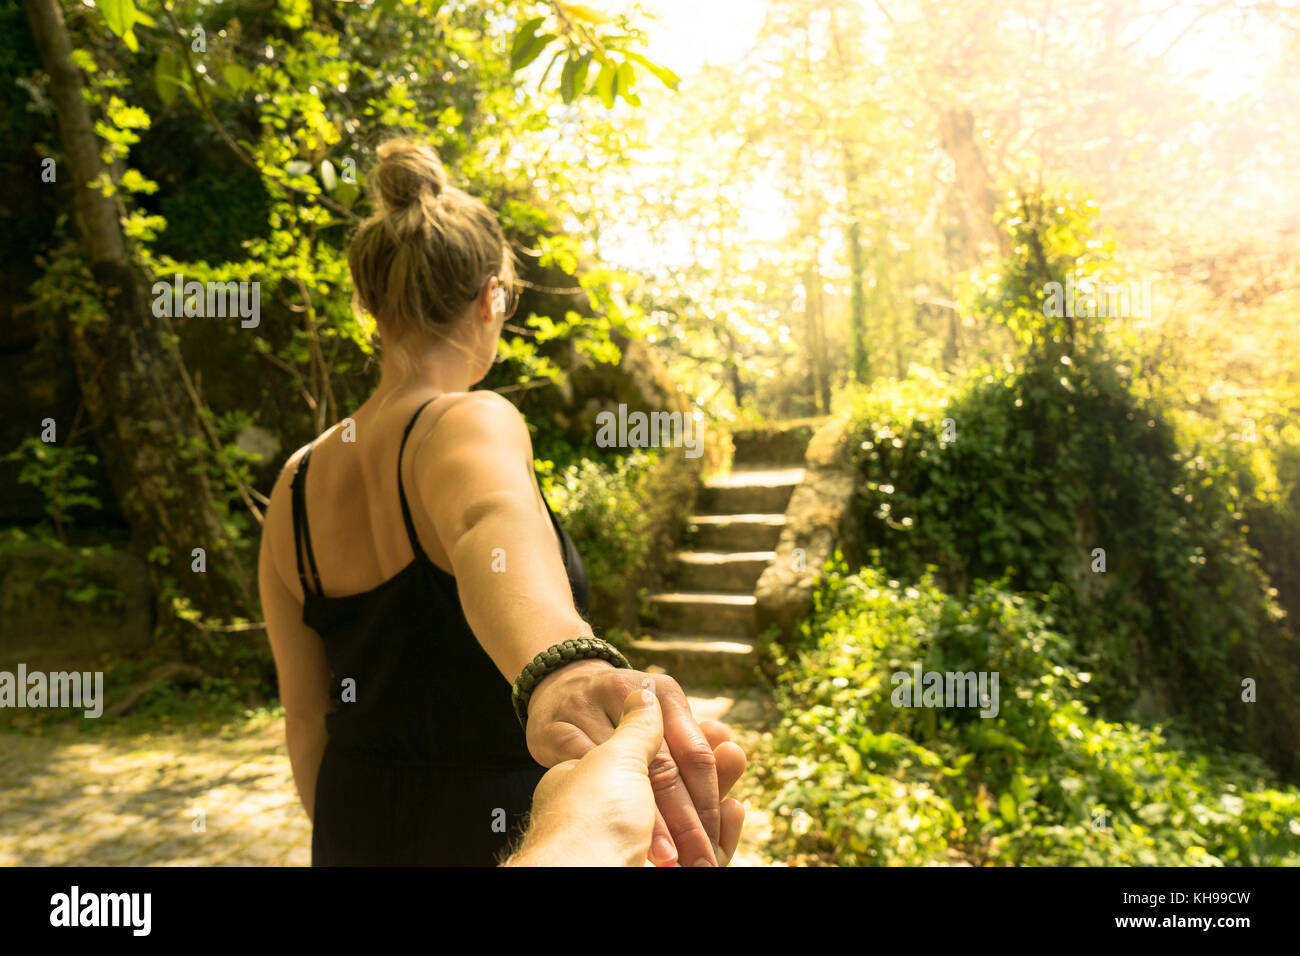 Coulple tenendo le mani in un giardino. Camminare insieme verso le scale. Foto Stock